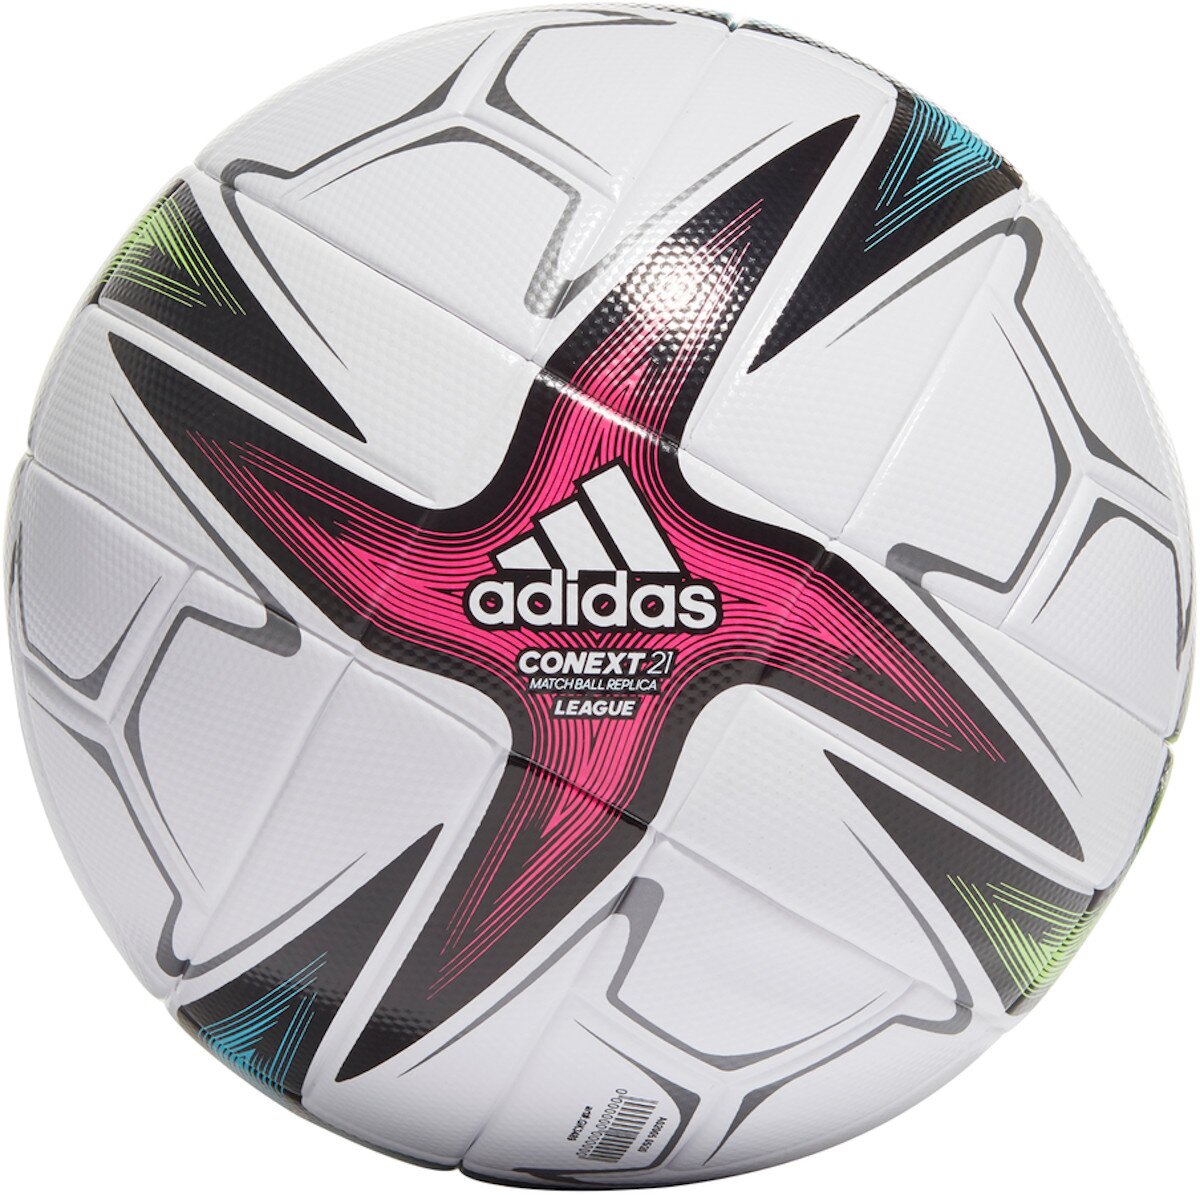 

Футбольный мяч Adidas Conext 21 League GK3489, размер №4